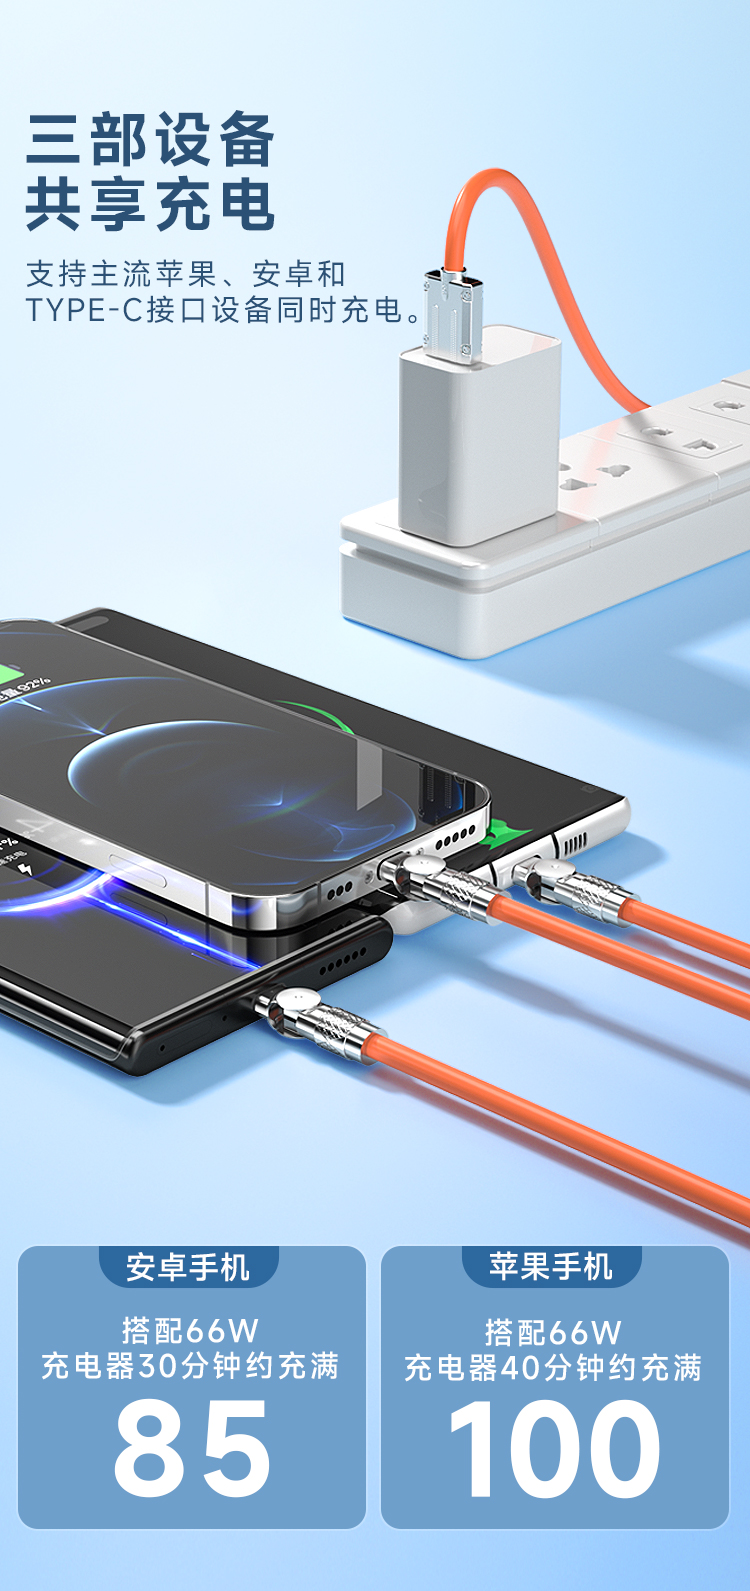 多充电线 3 合 1 尼龙编织多 USB 快速充电线适配器 C 型 Micro USB 端口连接器(图3)